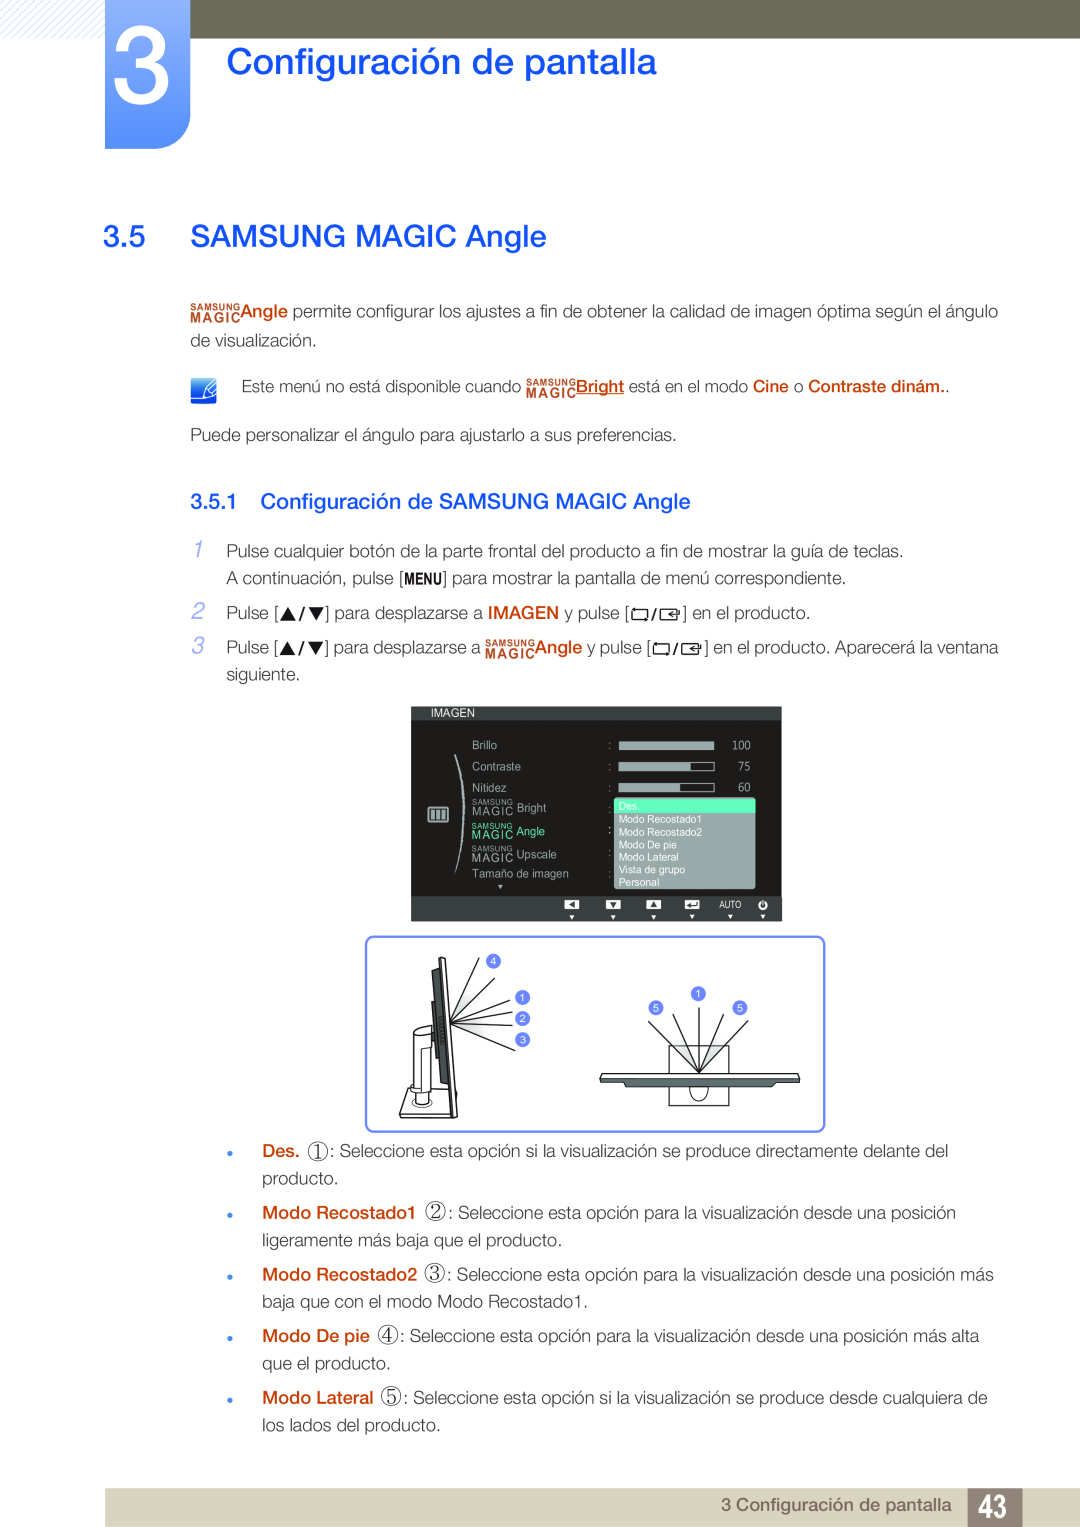 Samsung LS19C45KBW/EN, LS22C45KMSV/EN, LS19C45KMWV/EN Configuración de SAMSUNG MAGIC Angle, Configuración de pantalla 